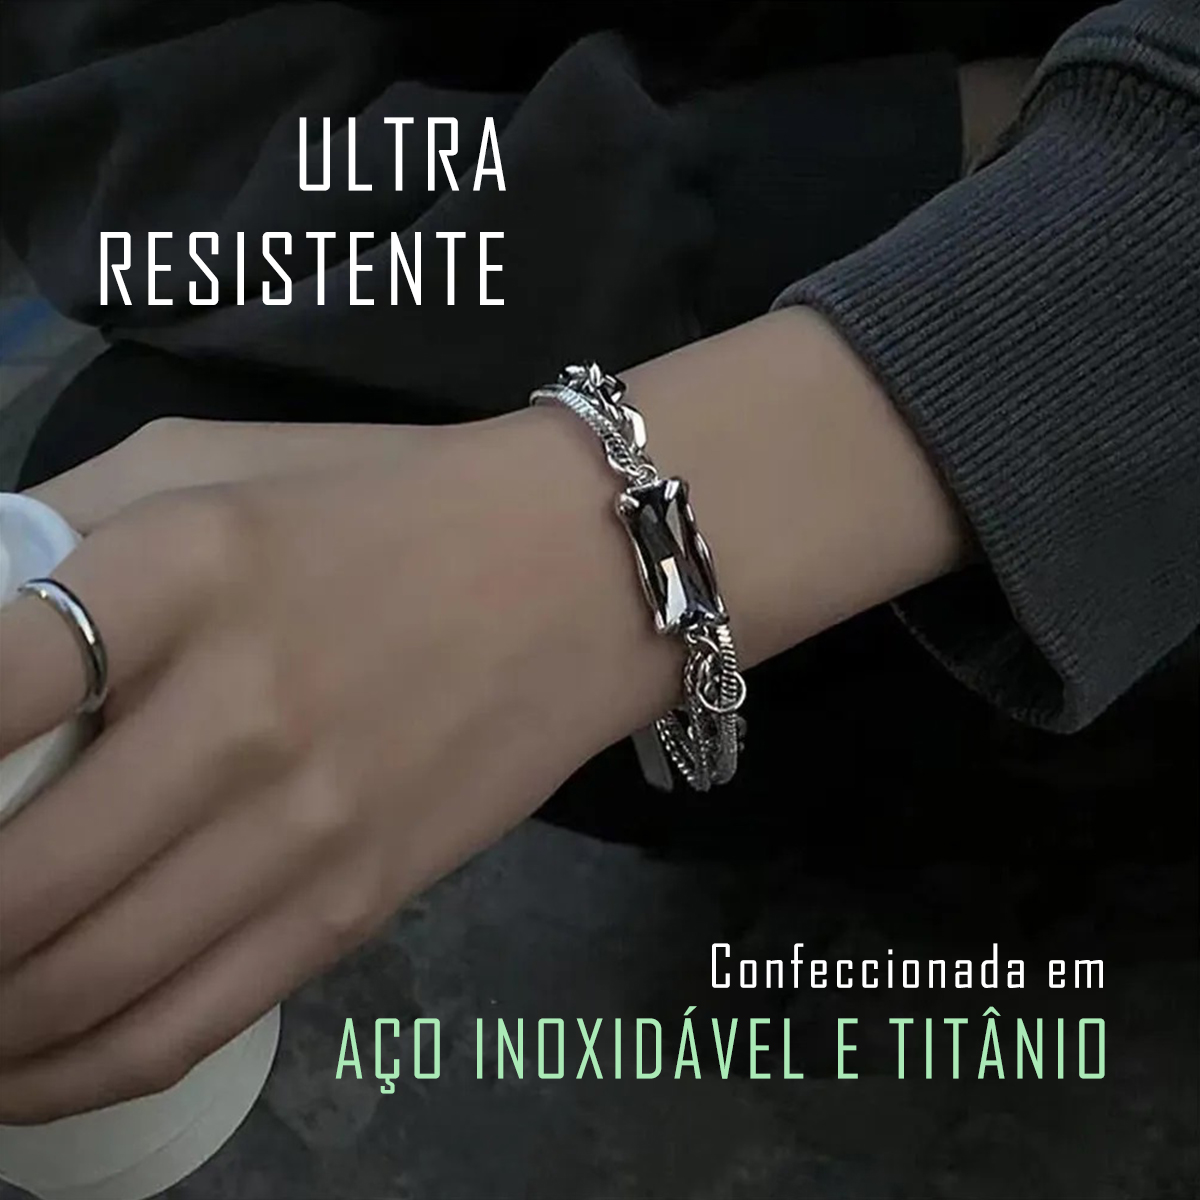 titânium, pulseira em aço inoxidável antialérgico, pulseira robusta, ultra resistente, luxo